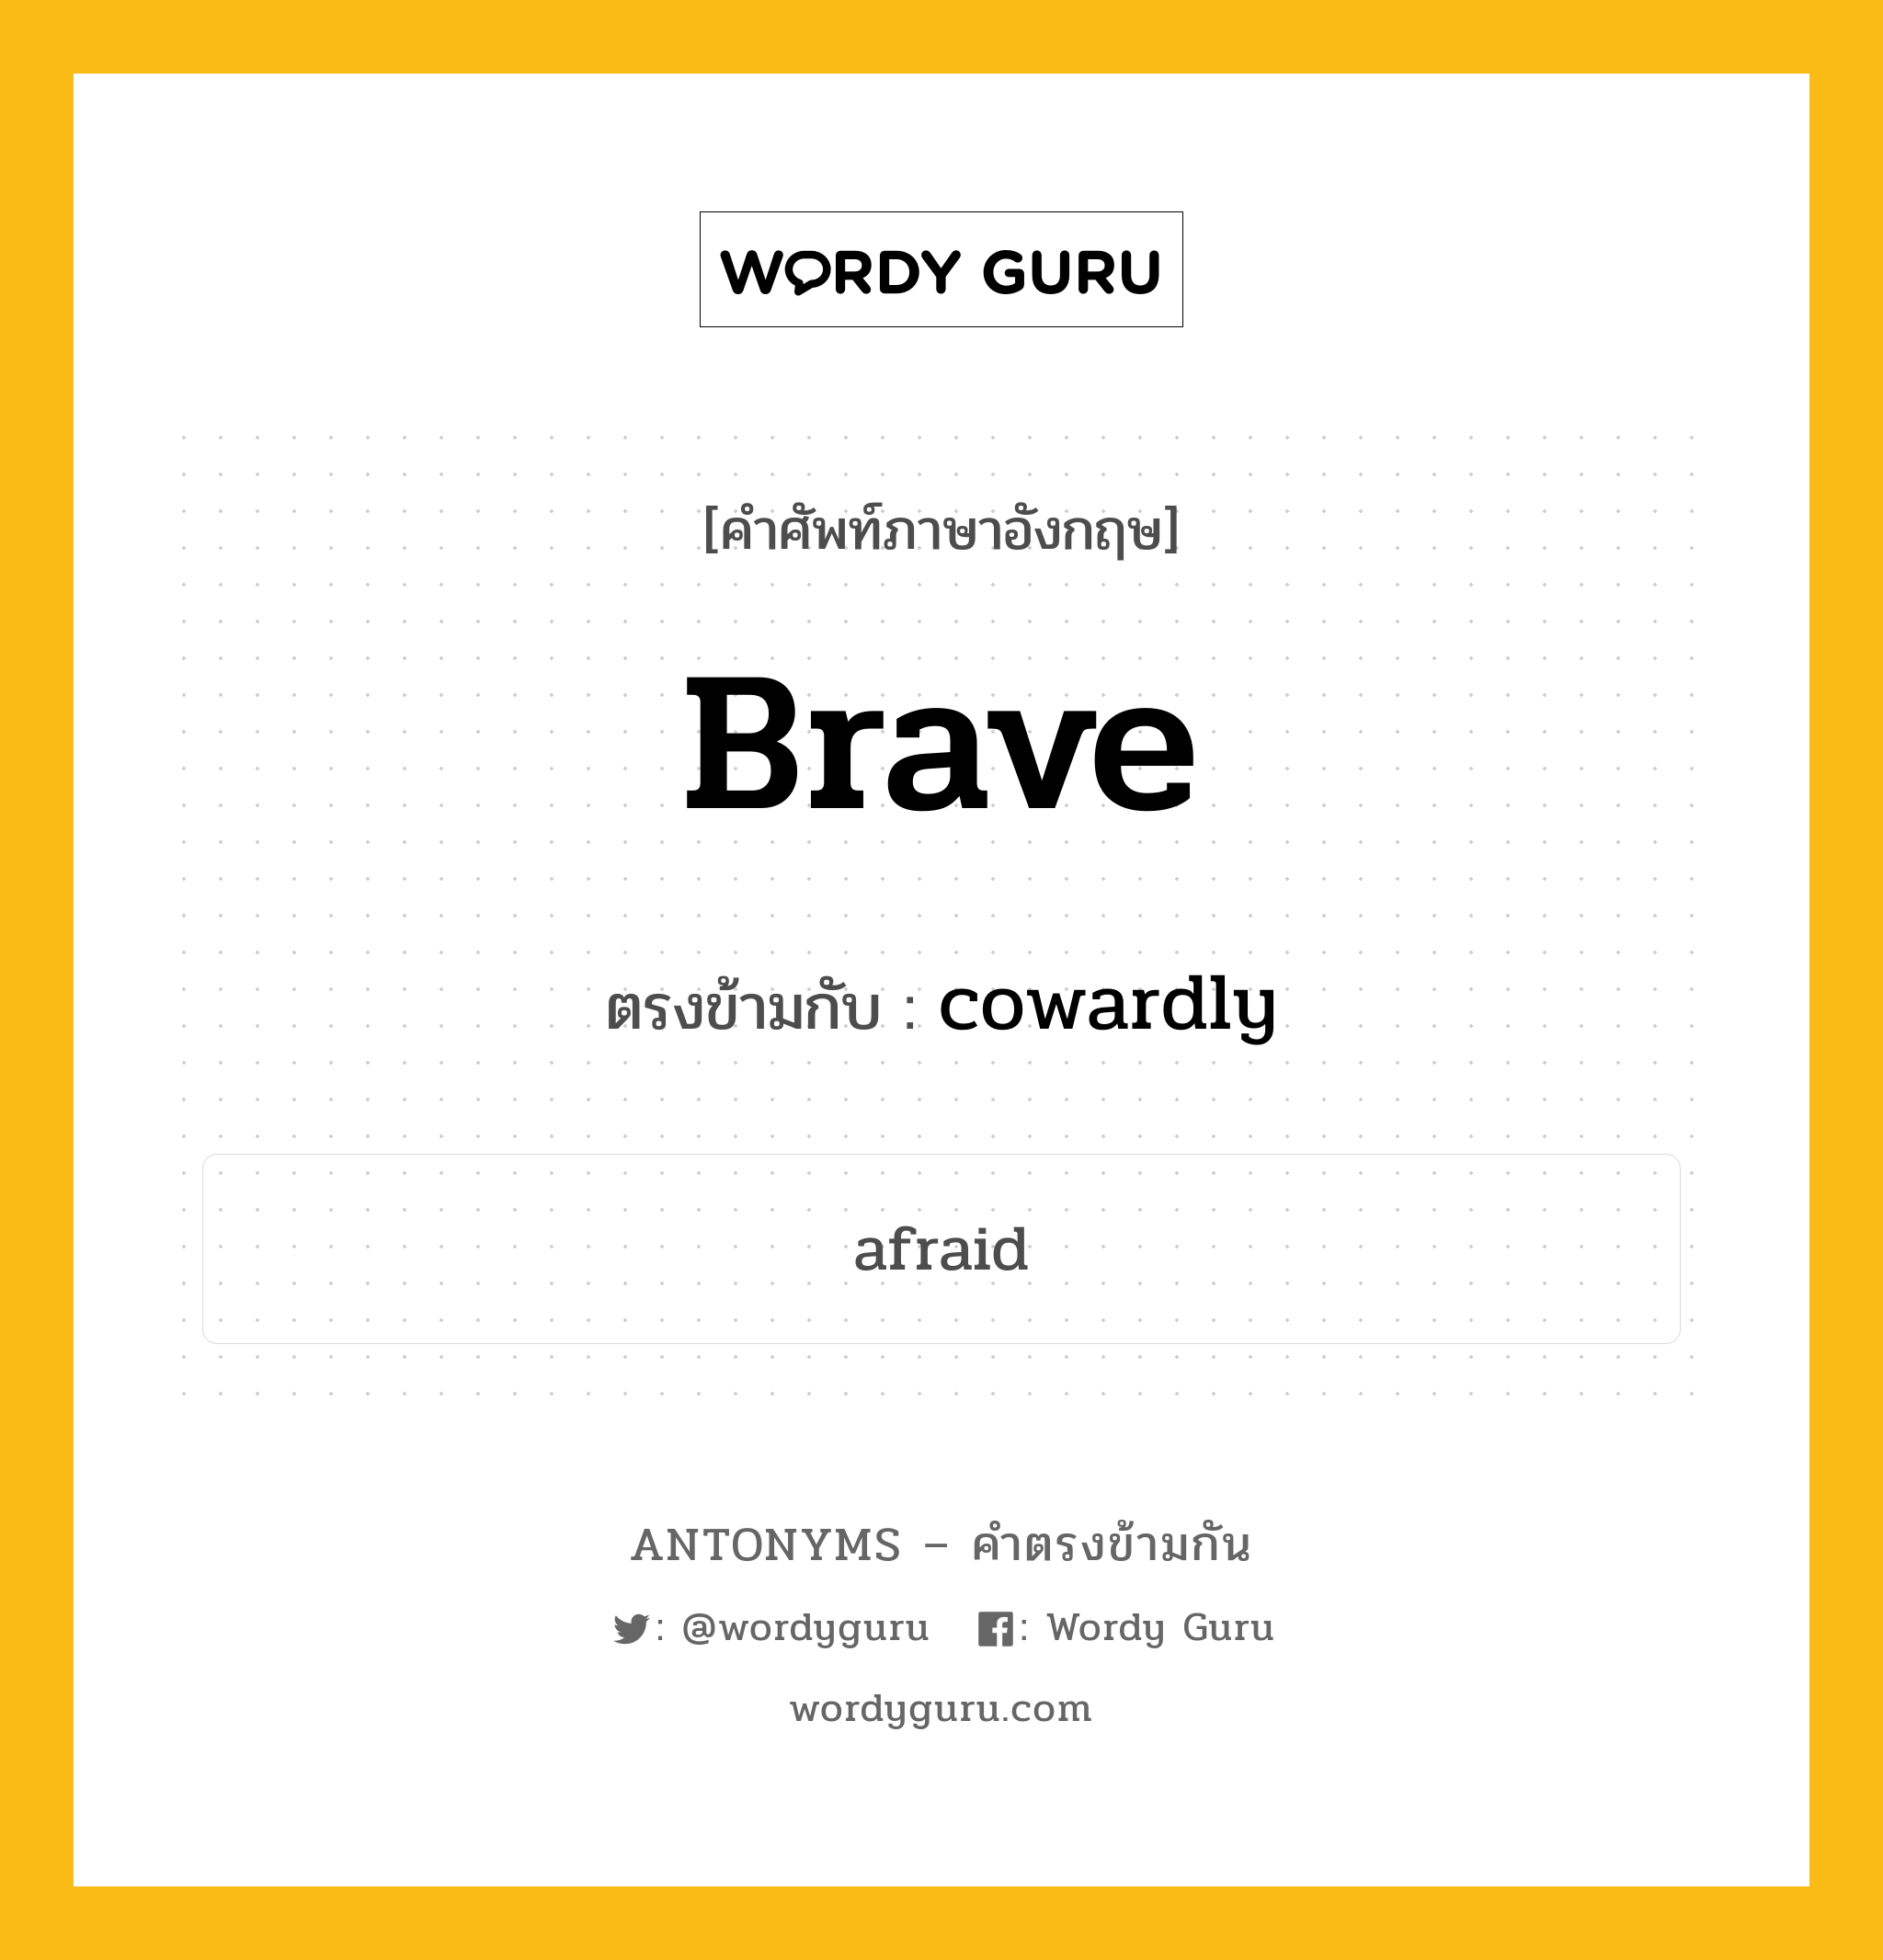 brave เป็นคำตรงข้ามกับคำไหนบ้าง?, คำศัพท์ภาษาอังกฤษ brave ตรงข้ามกับ cowardly หมวด cowardly